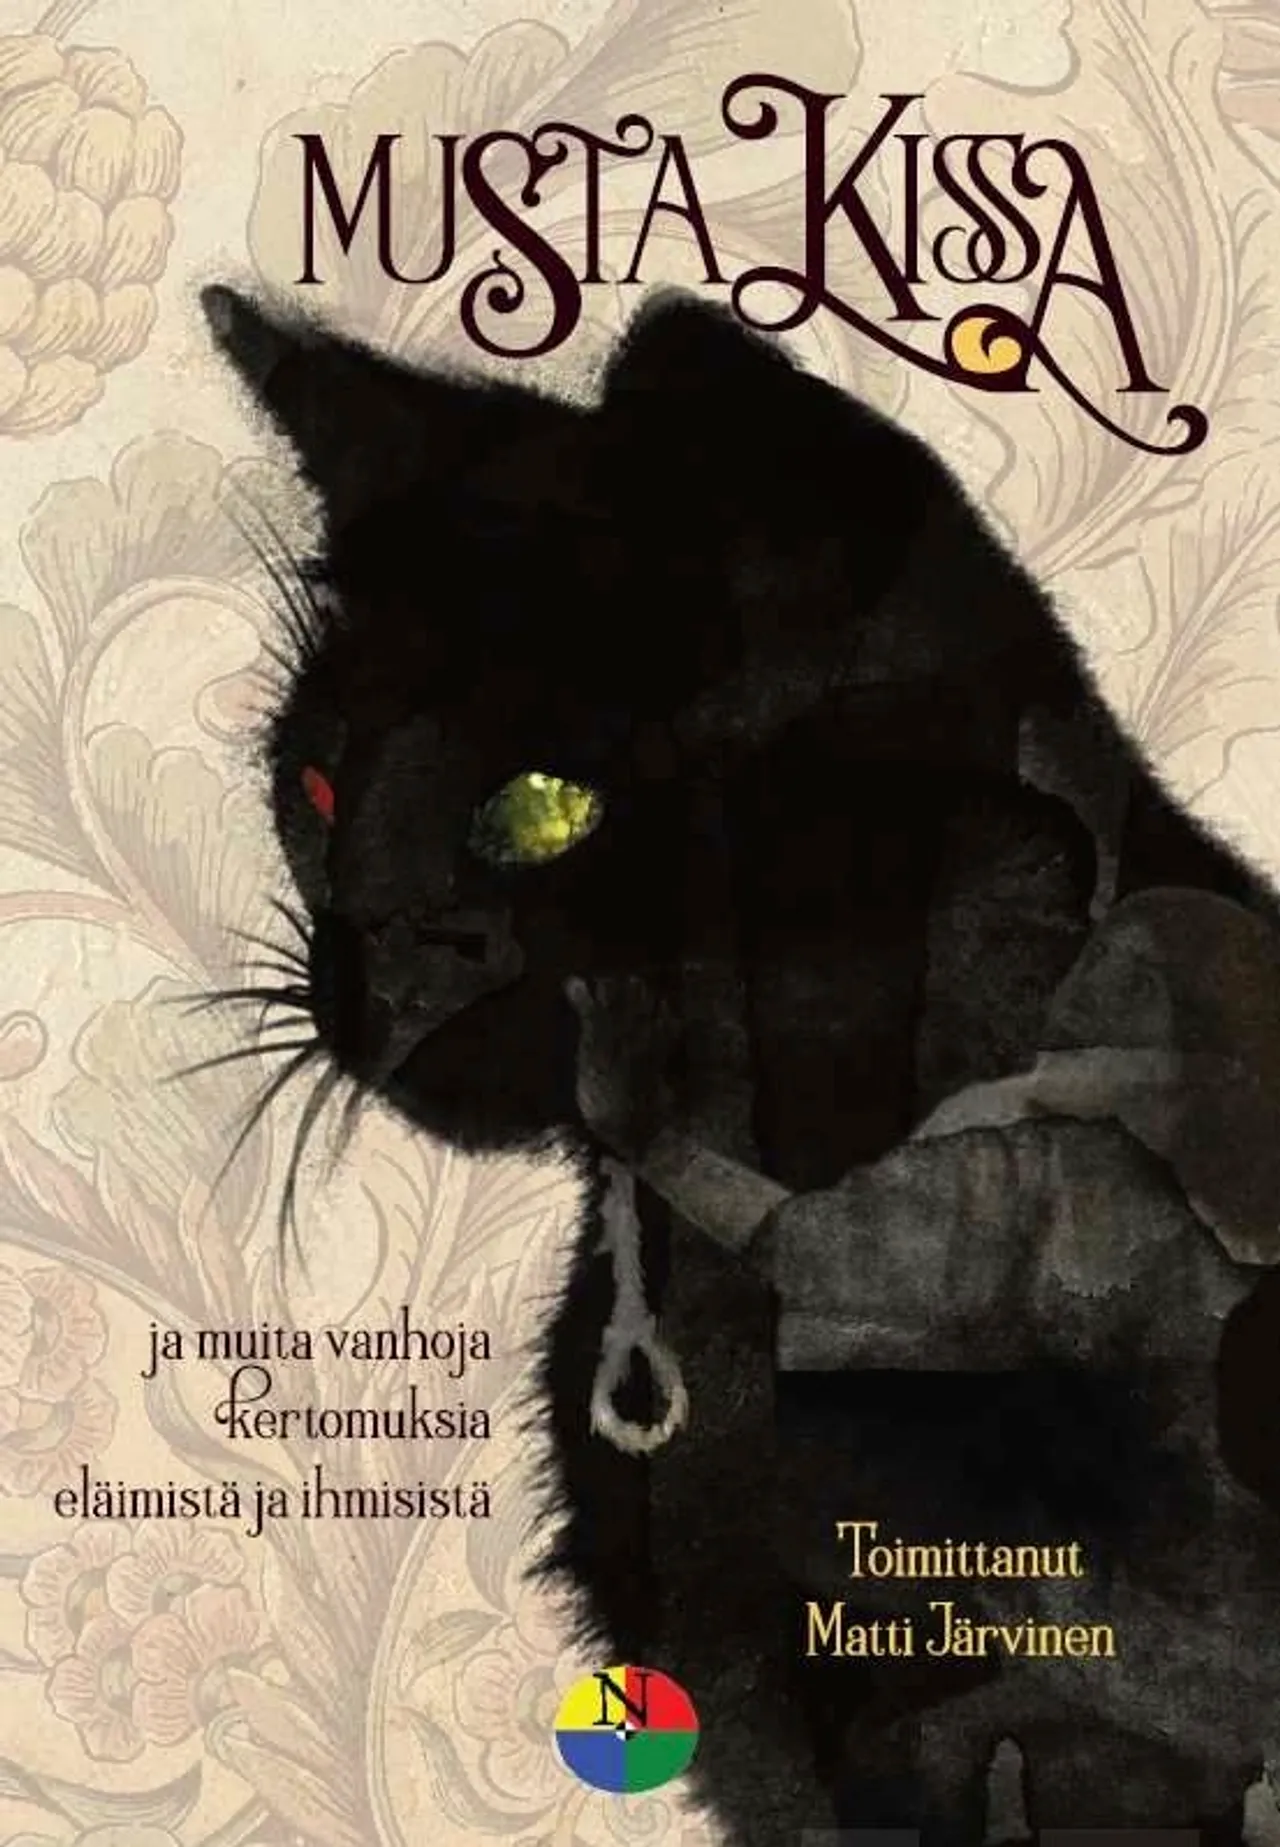 Musta kissa : ja muita vanhoja kertomuksia eläimistä ja ihmisistä (Finnish language, 2019)